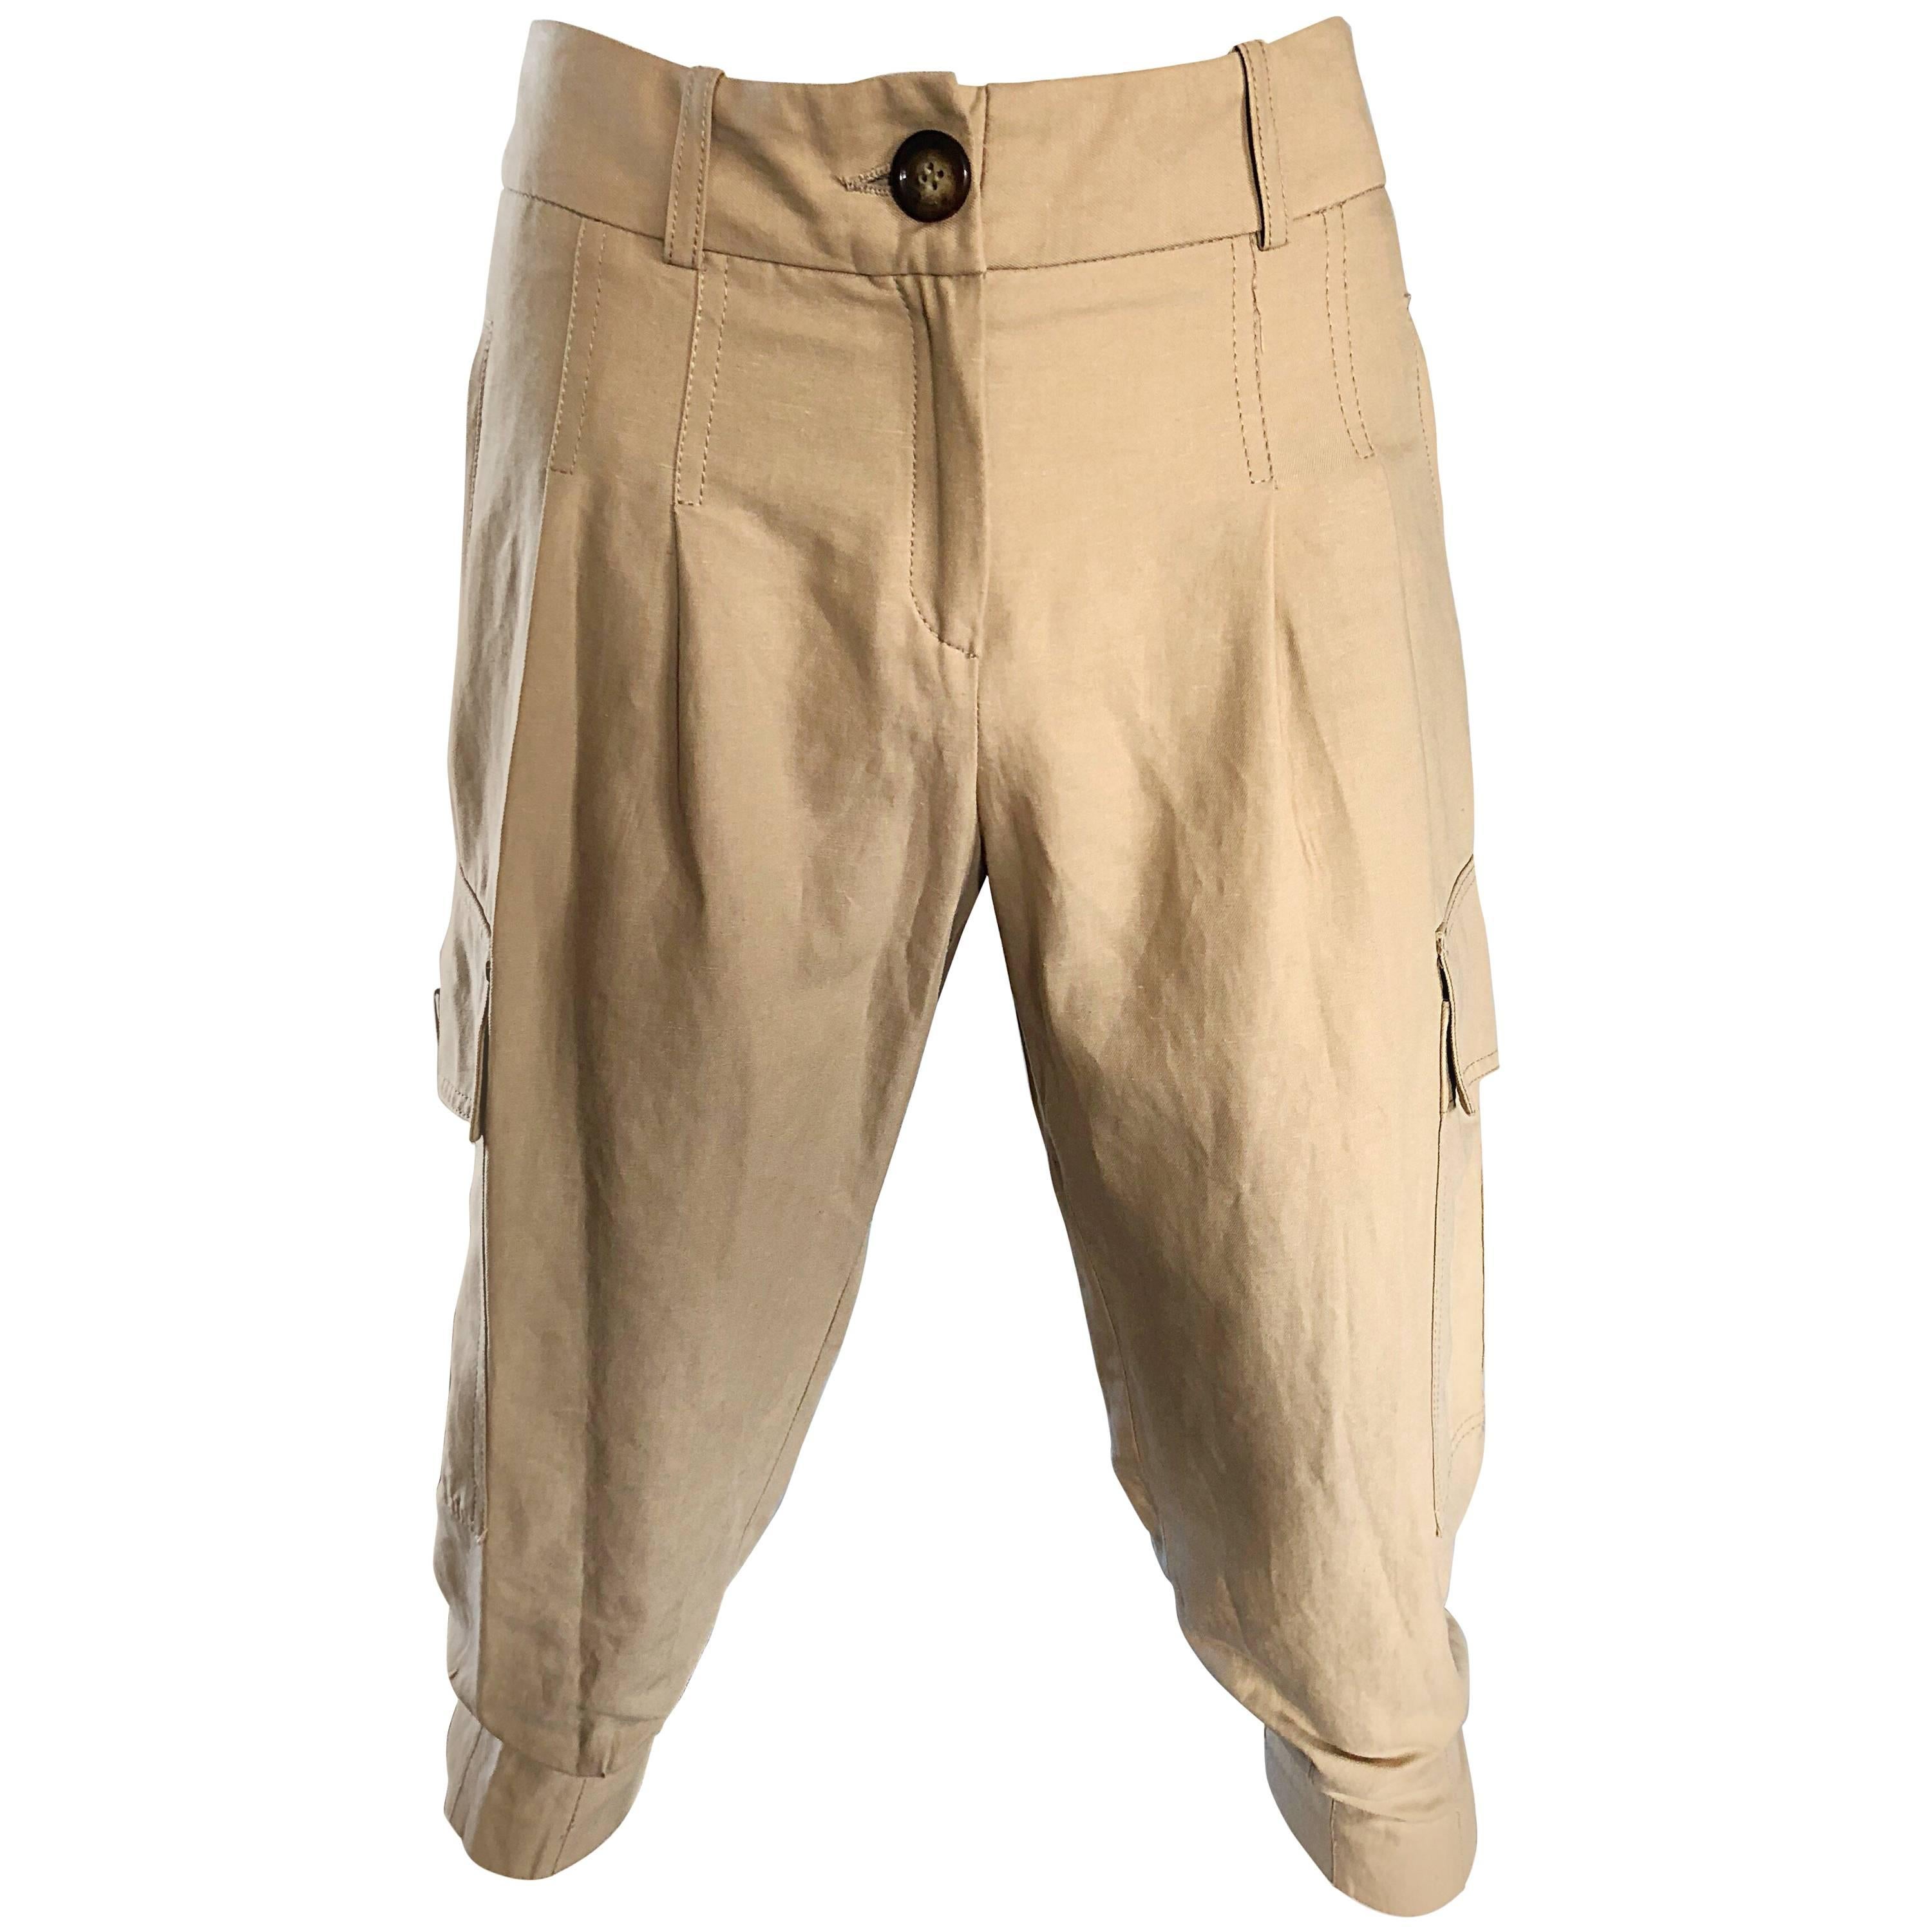 Michael Kors Collection 1990s Khaki Jodhpur Safari Style Cargo Capri Pants 